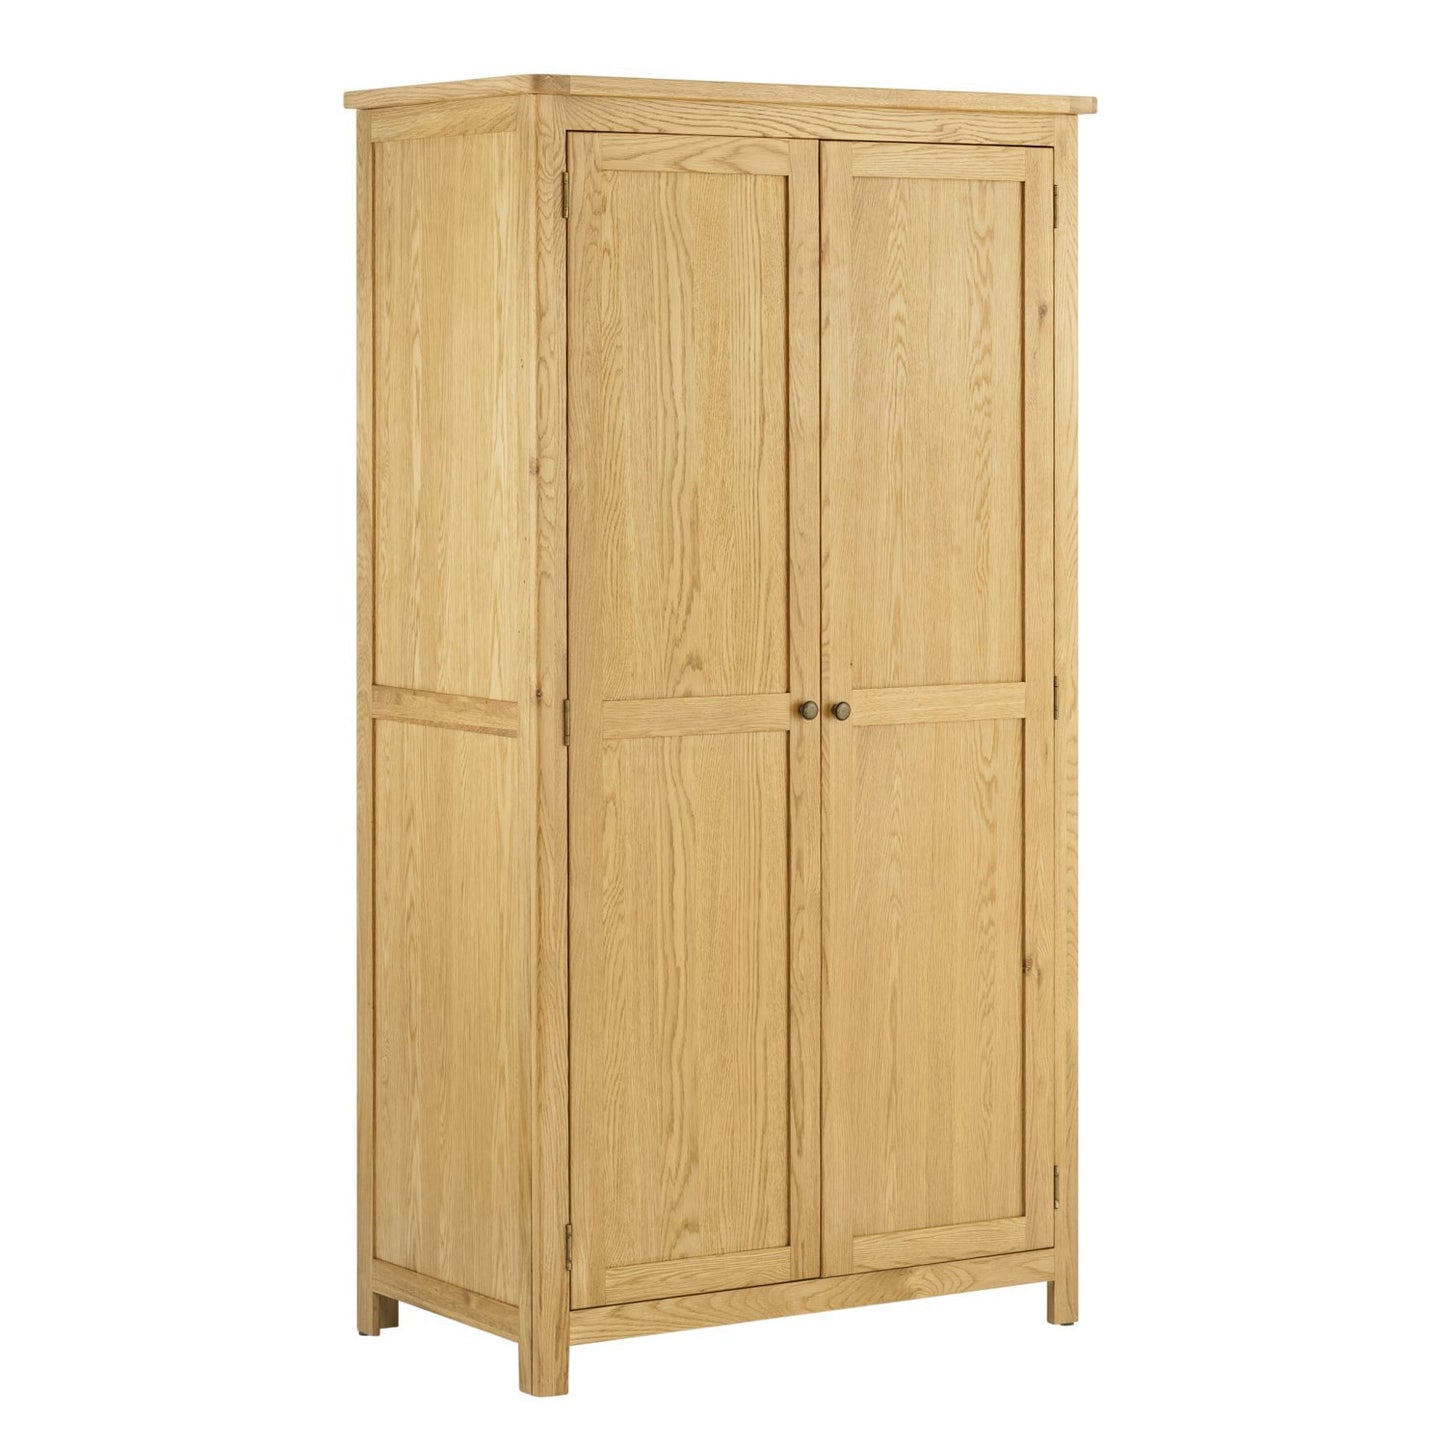 Todenham Oak Wardrobe - Double 2 Door Full Hanging